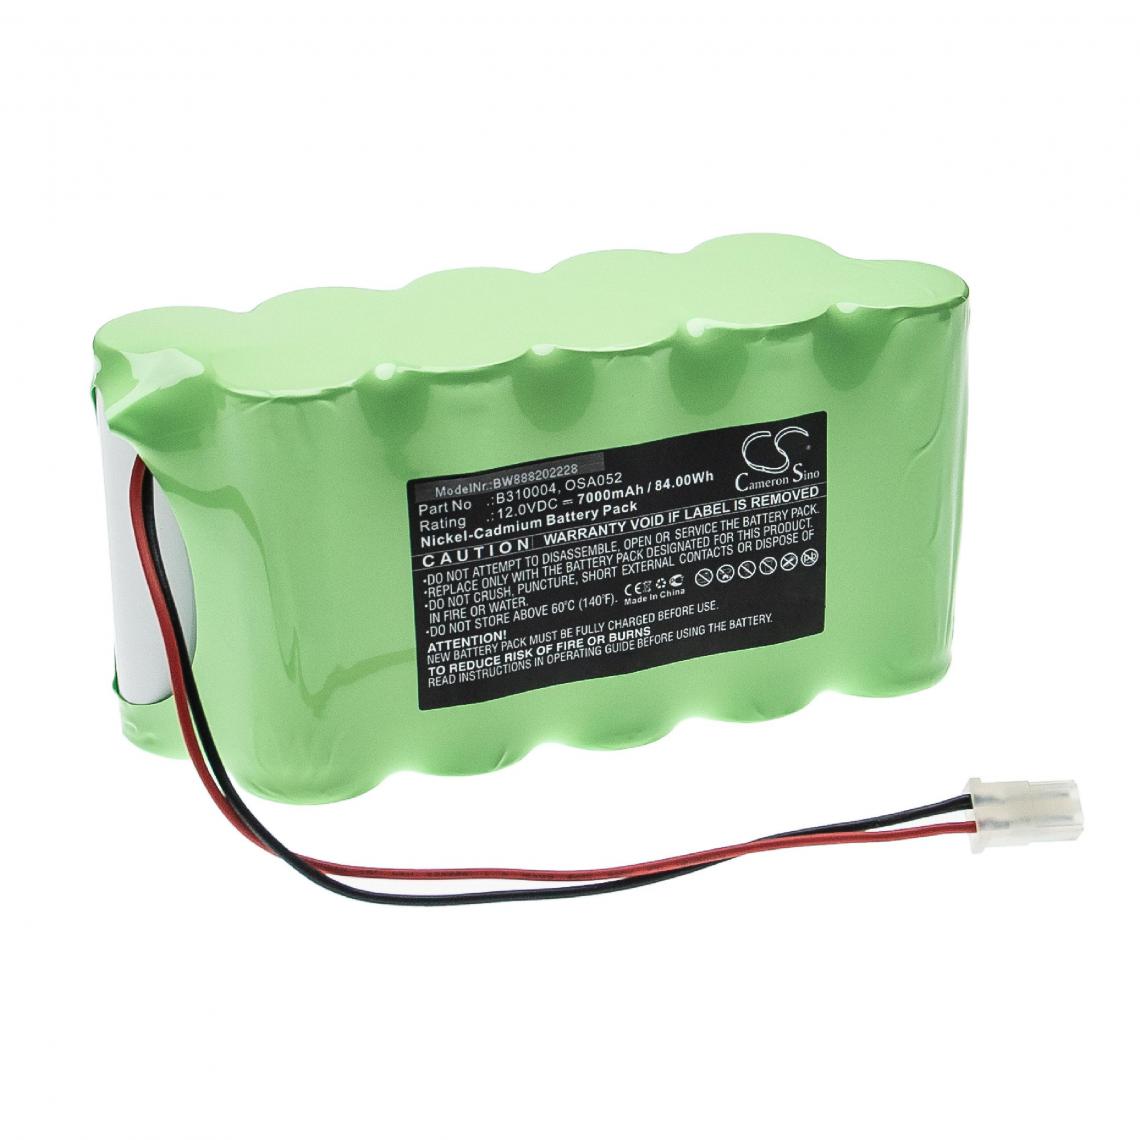 Vhbw - vhbw Batterie remplacement pour Lithonia B310004, OSA052 pour éclairage d'issue de secours (7000mAh, 12V, NiCd) - Autre appareil de mesure